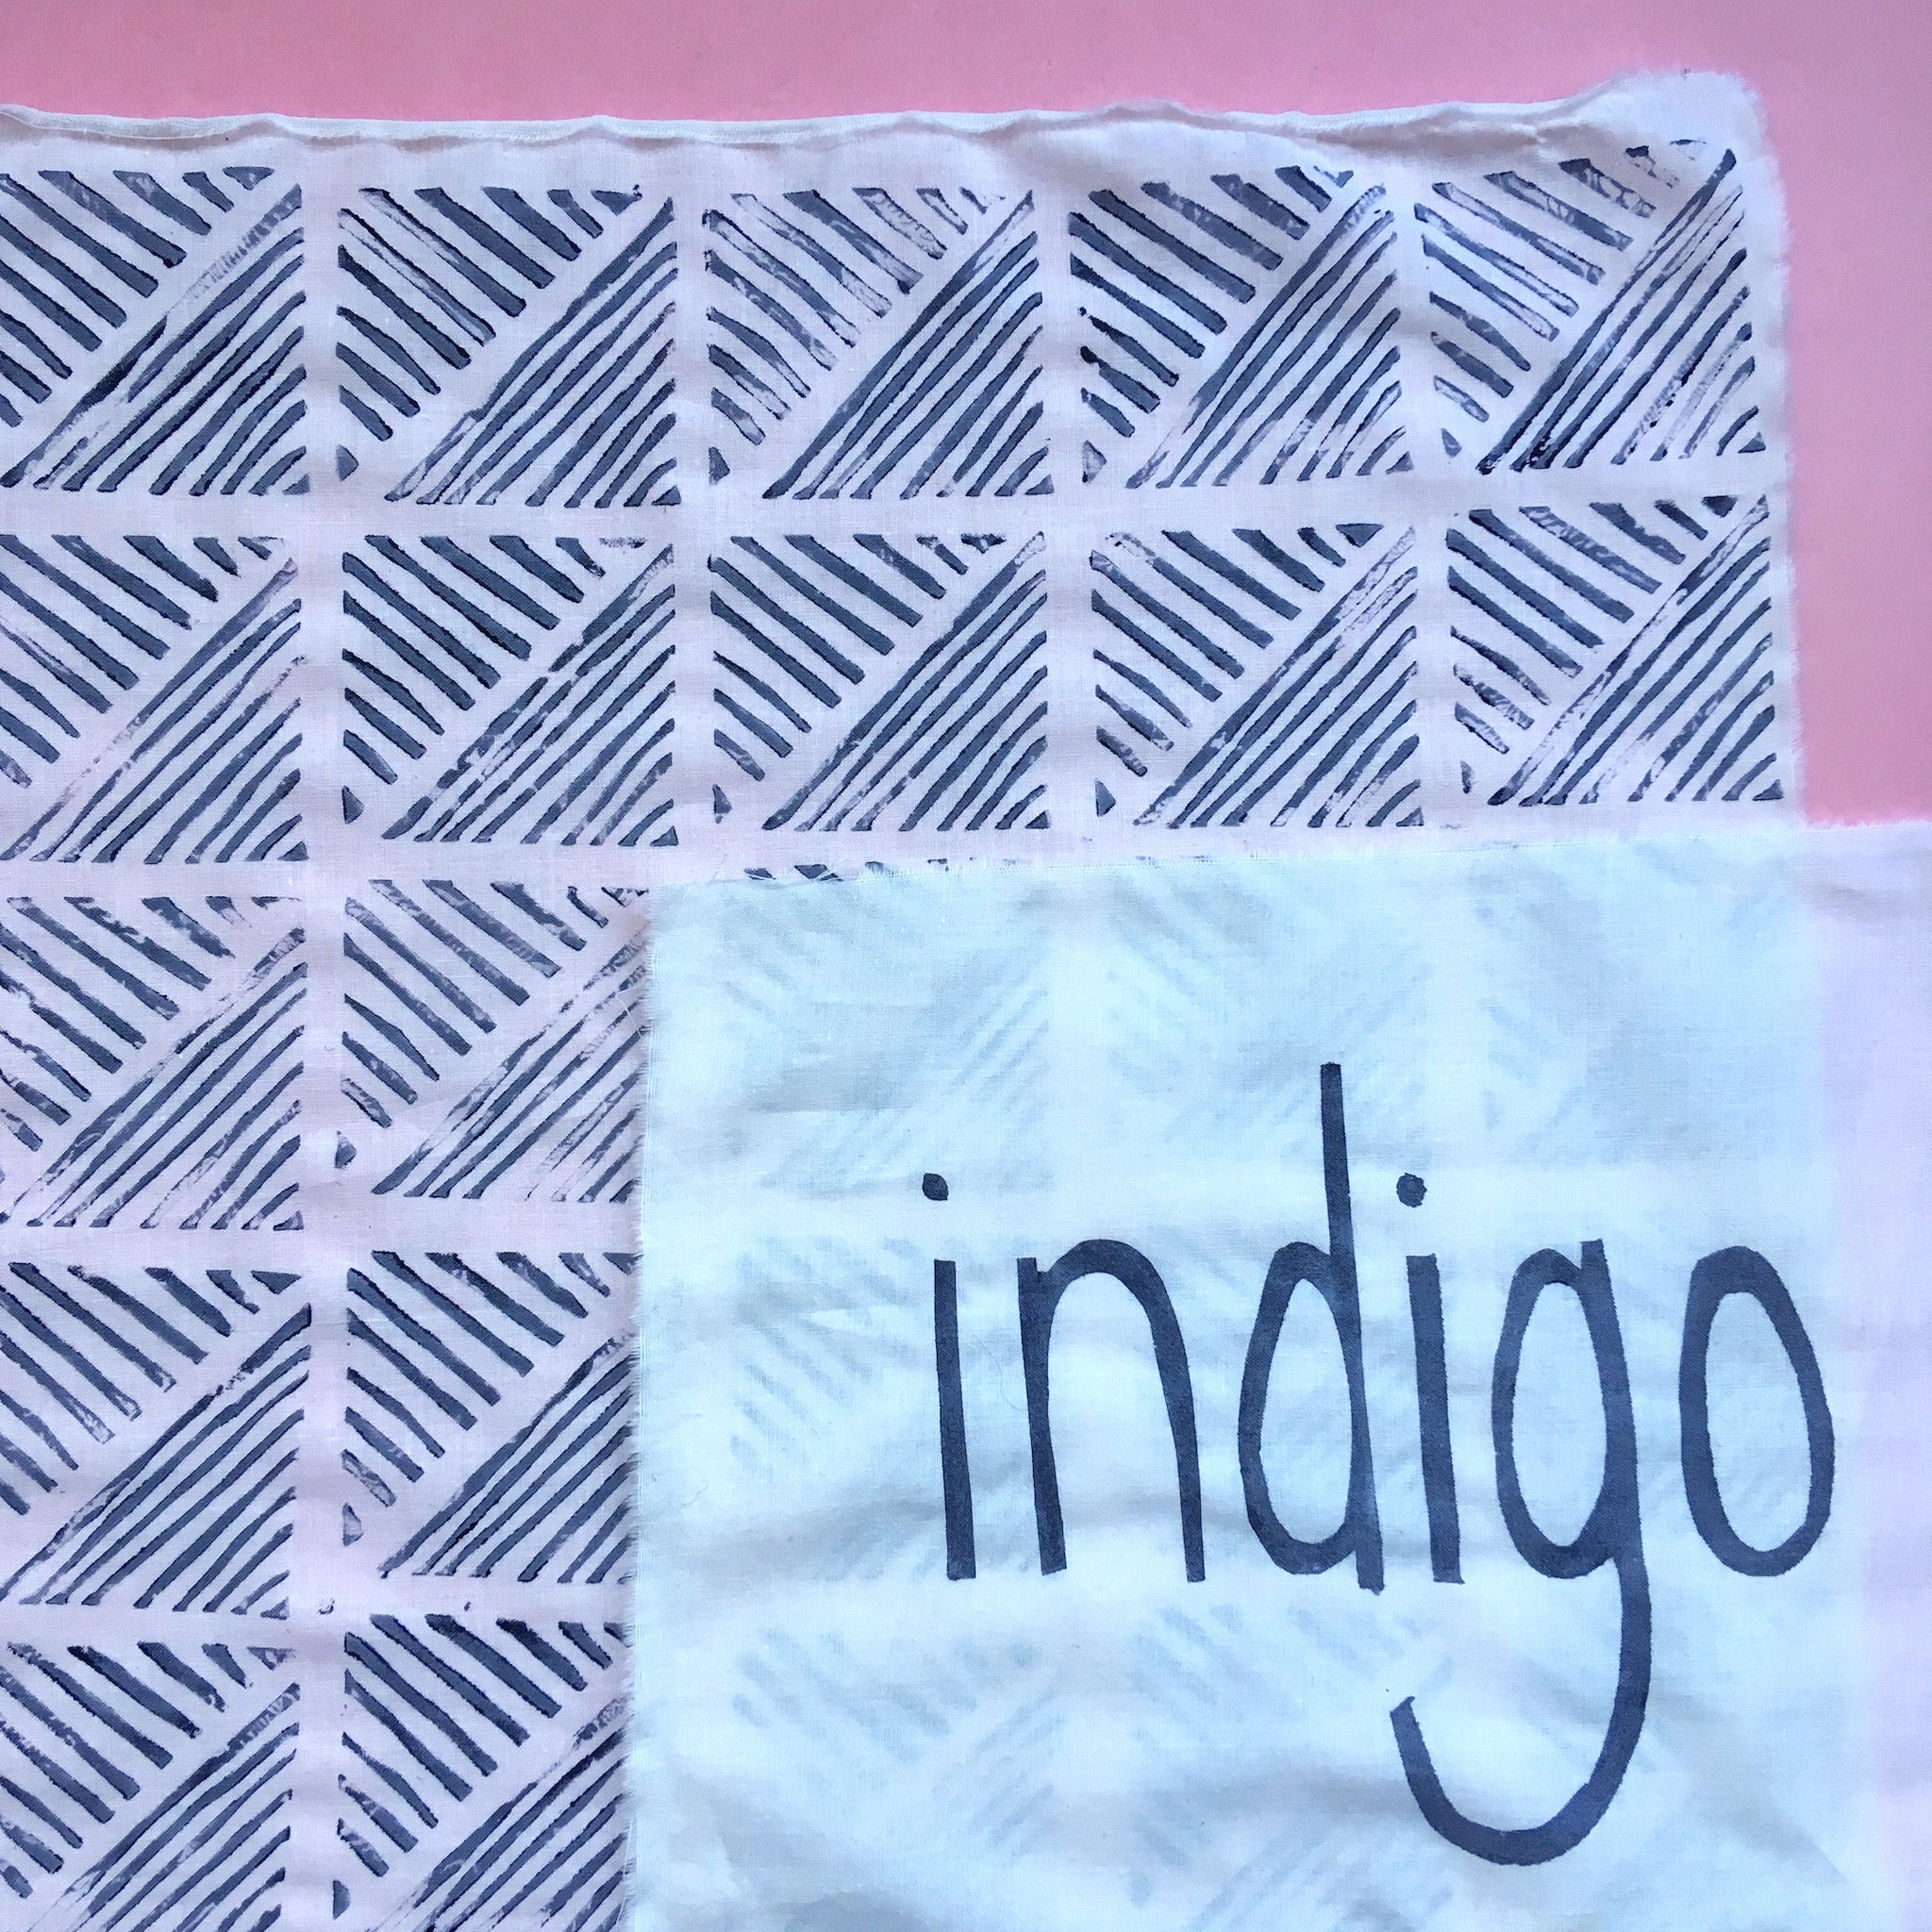 Indigo Blockprinting Kit